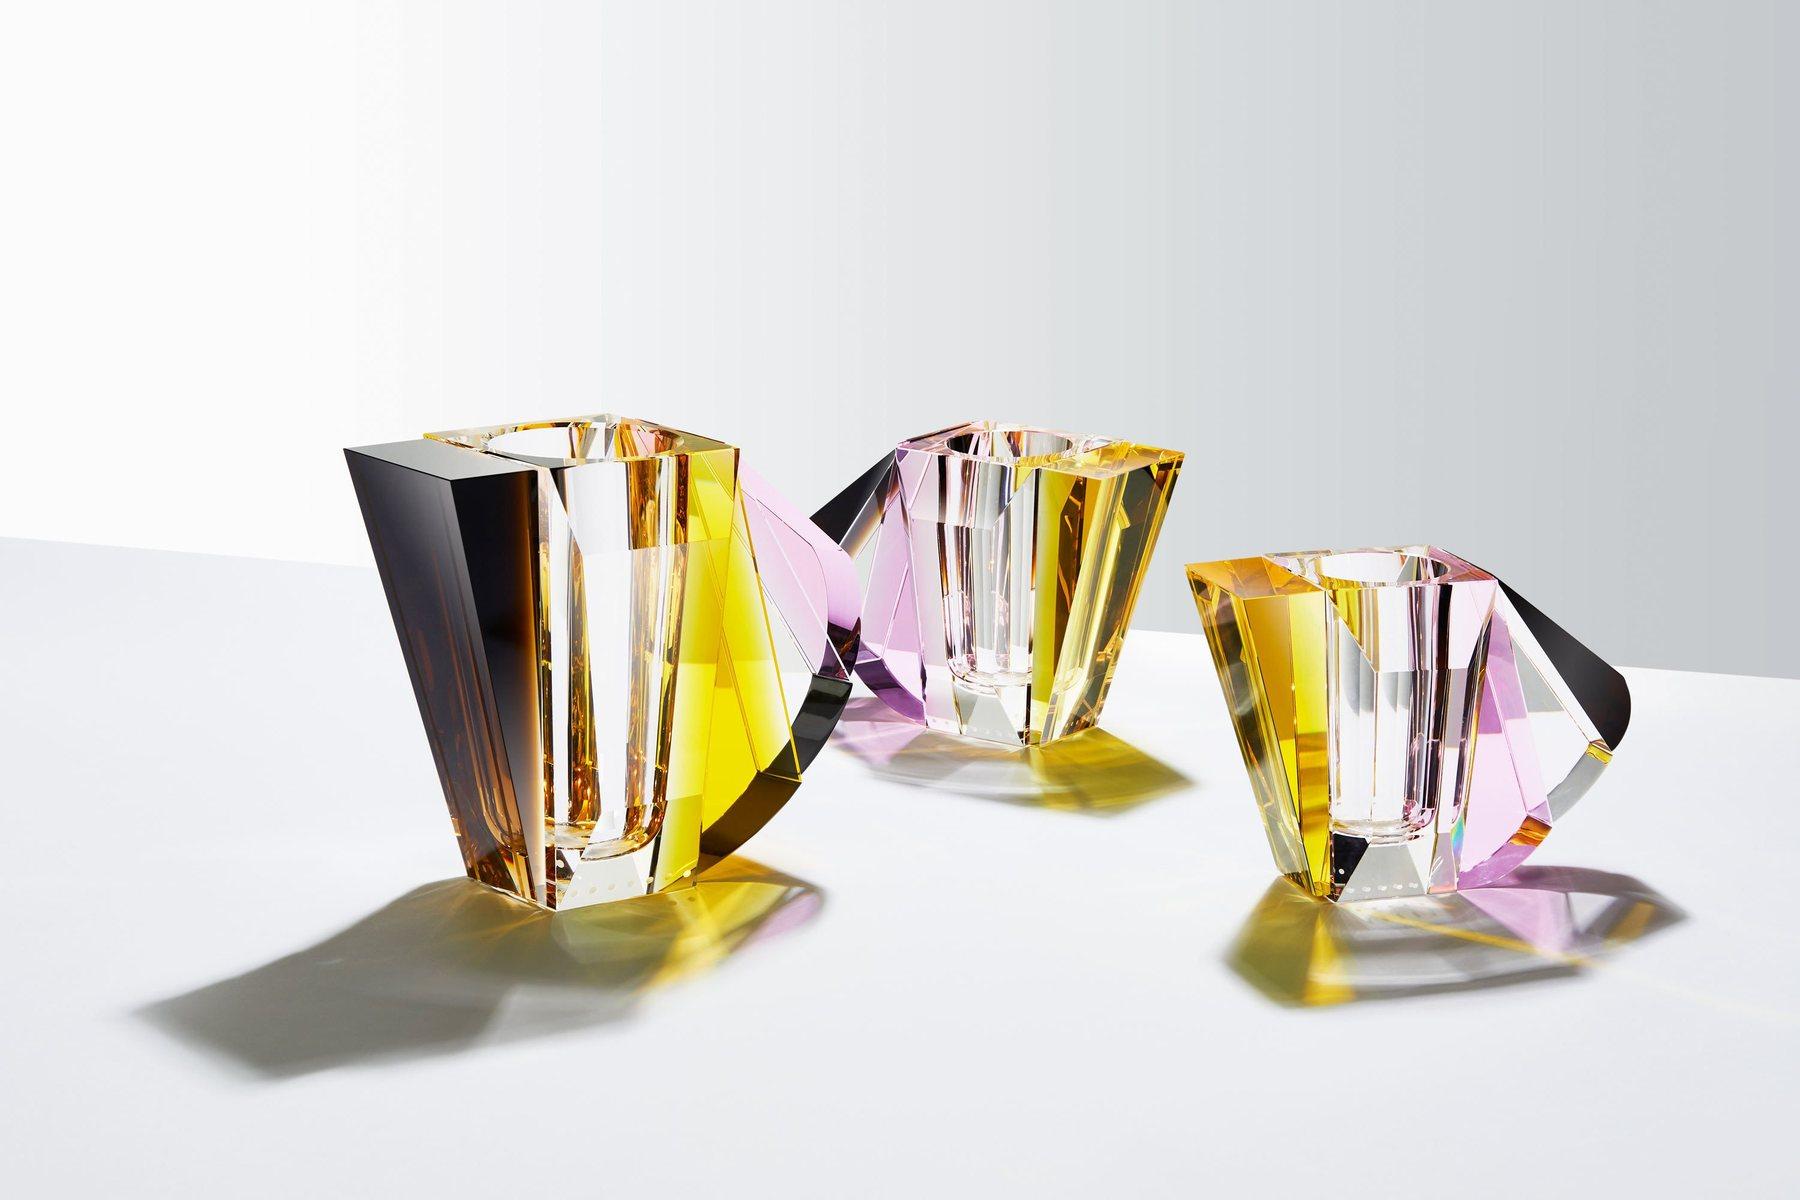 Vase contemporain NYC, cristal contemporain sculpté à la main
Vase en cristal
Sculptée à la main en cristal
Mesures : Hauteur 25.5 cm
Largeur 23 cm
Profondeur 13,5 cm
Poids 8,3 kg
MATERIAL : Cristal fin taillé à la main

L'Art déco est un style